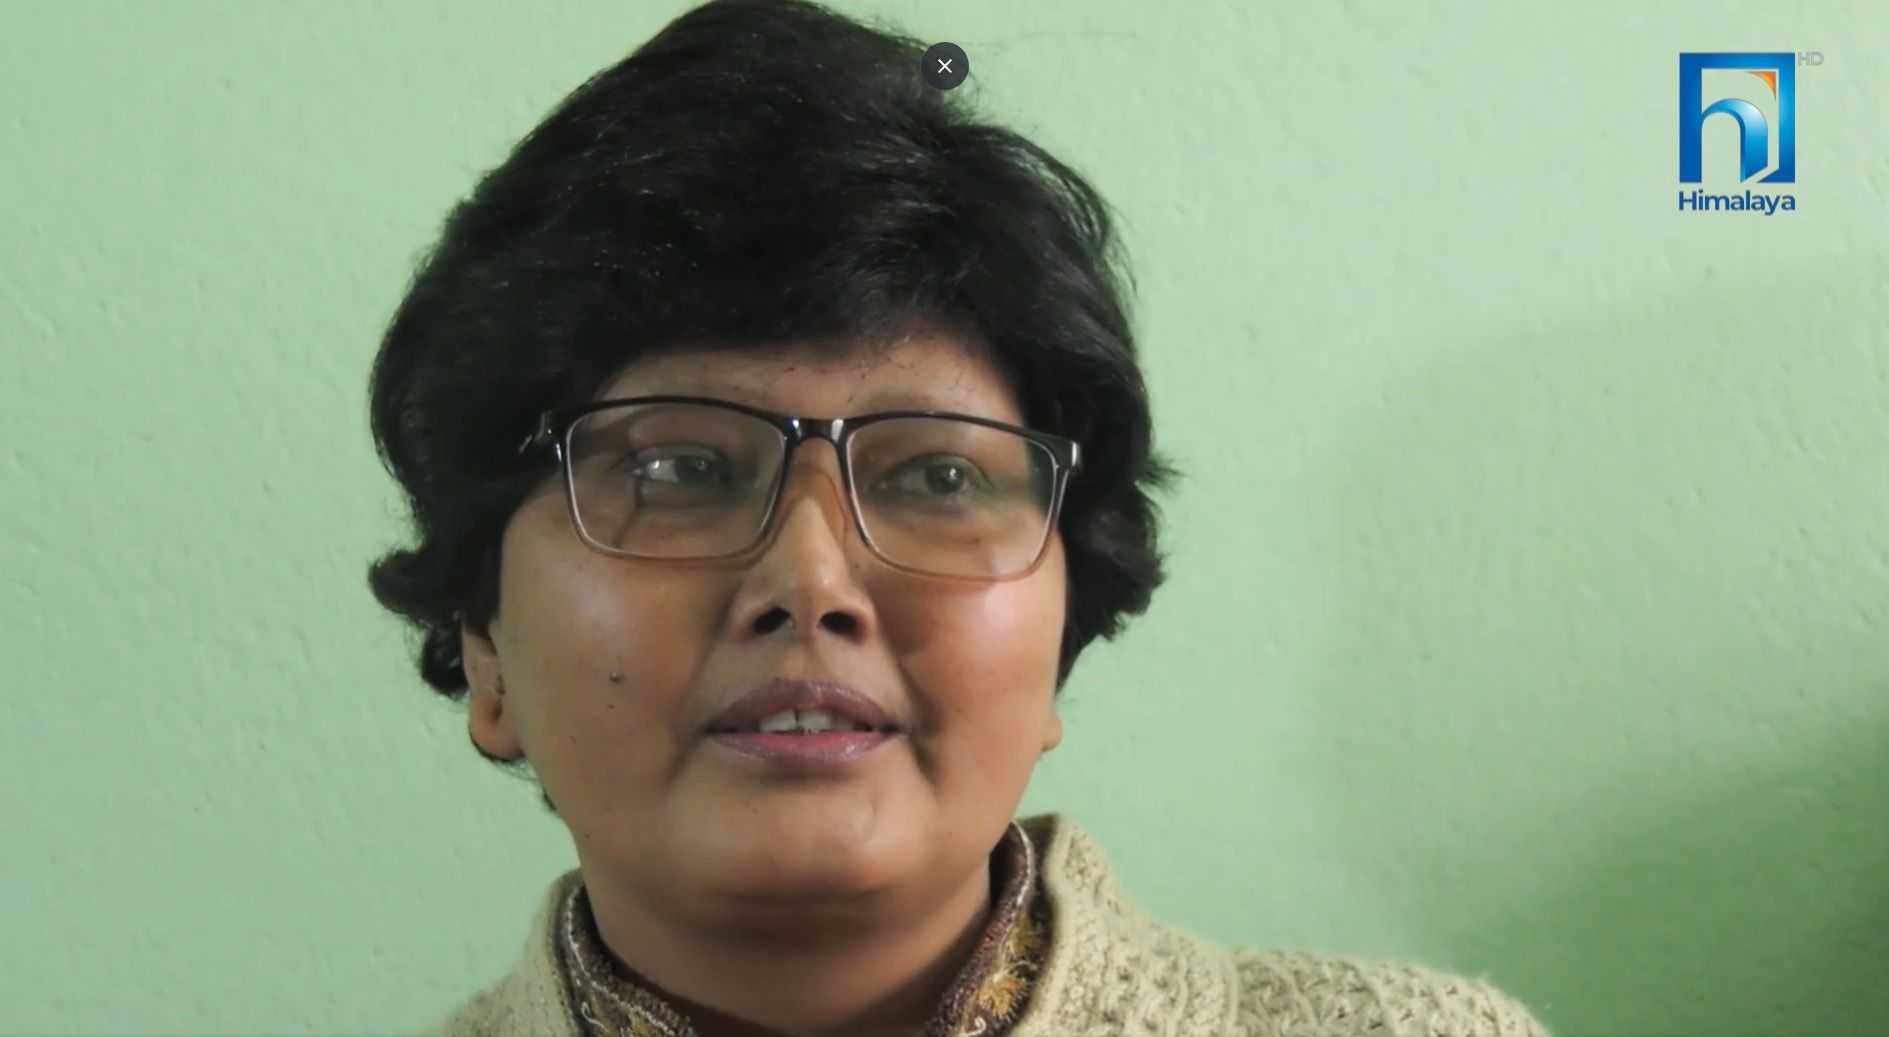 उपचार सहयोगका लागि नेपालकै कान्छी प्राध्यापकको याचना (भिडियो रिपोर्टसहित)